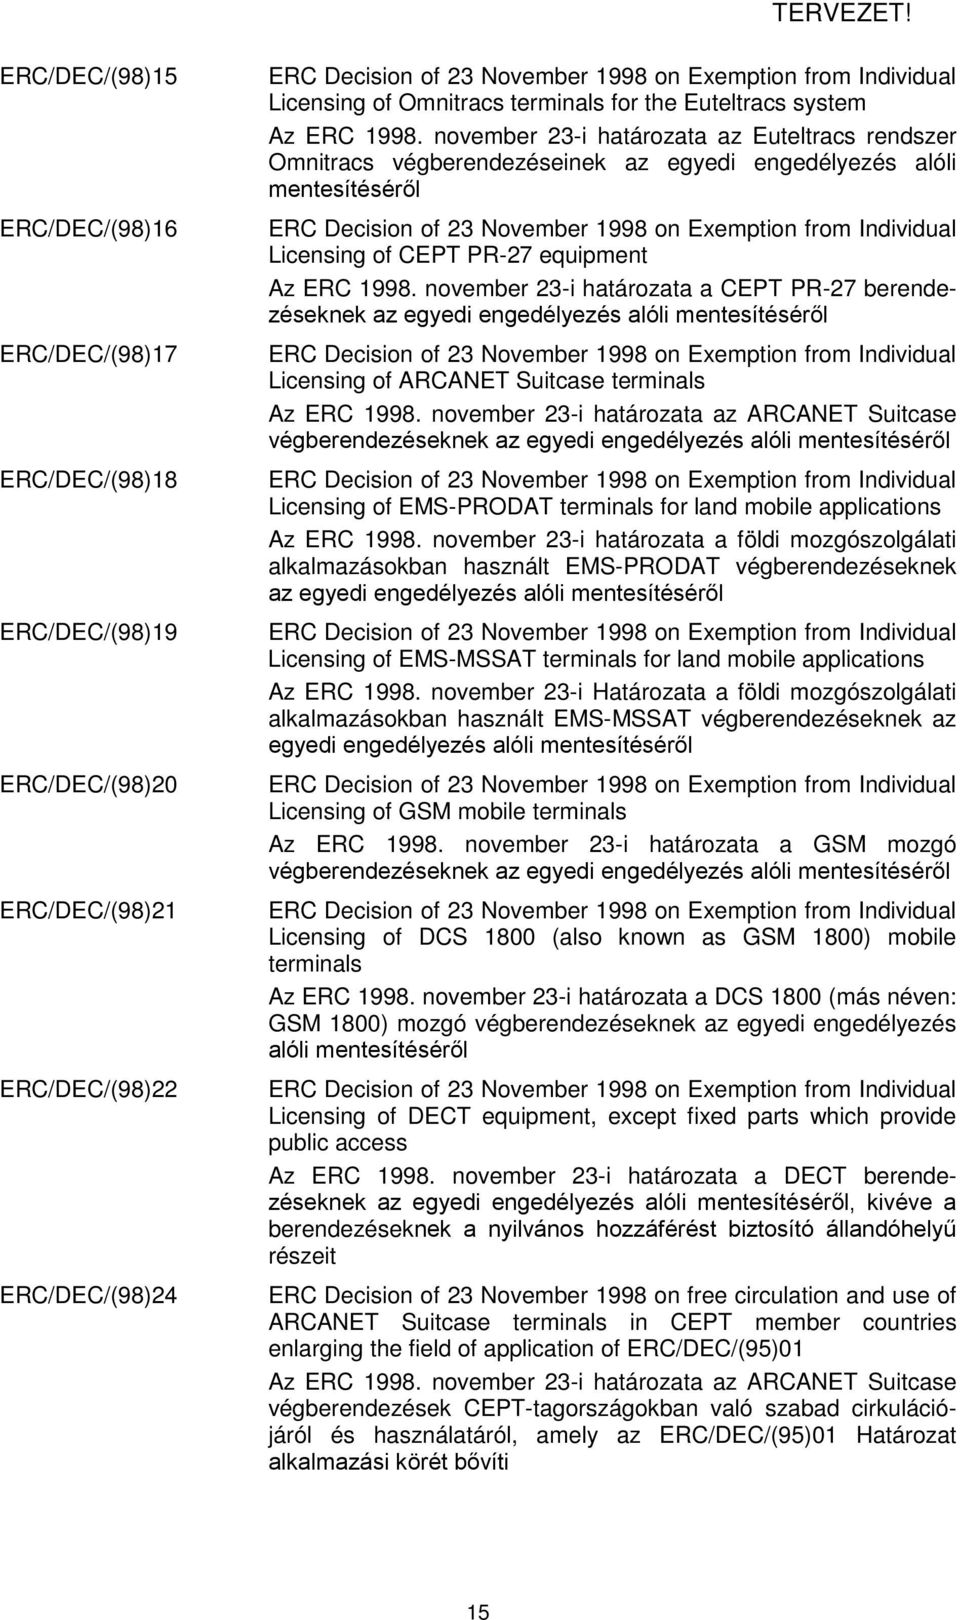 november 23-i határozata az Euteltracs rendszer Omnitracs végberendezéseinek az egyedi engedélyezés alóli mentesítéséről ERC Decision of 23 November 1998 on Exemption from Individual Licensing of